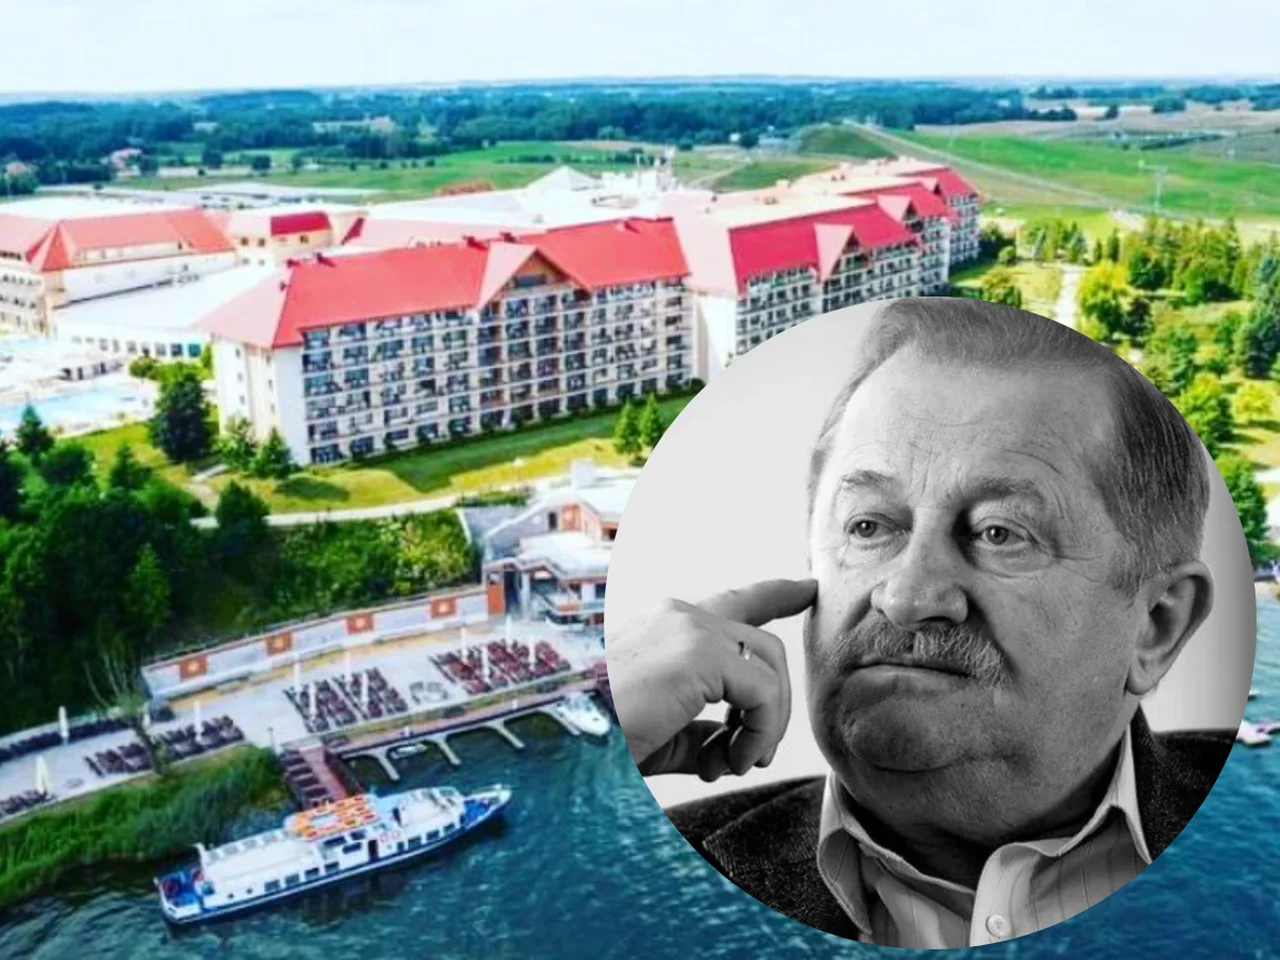 Co się stanie z hotelami Tadeusza Gołębiewskiego?